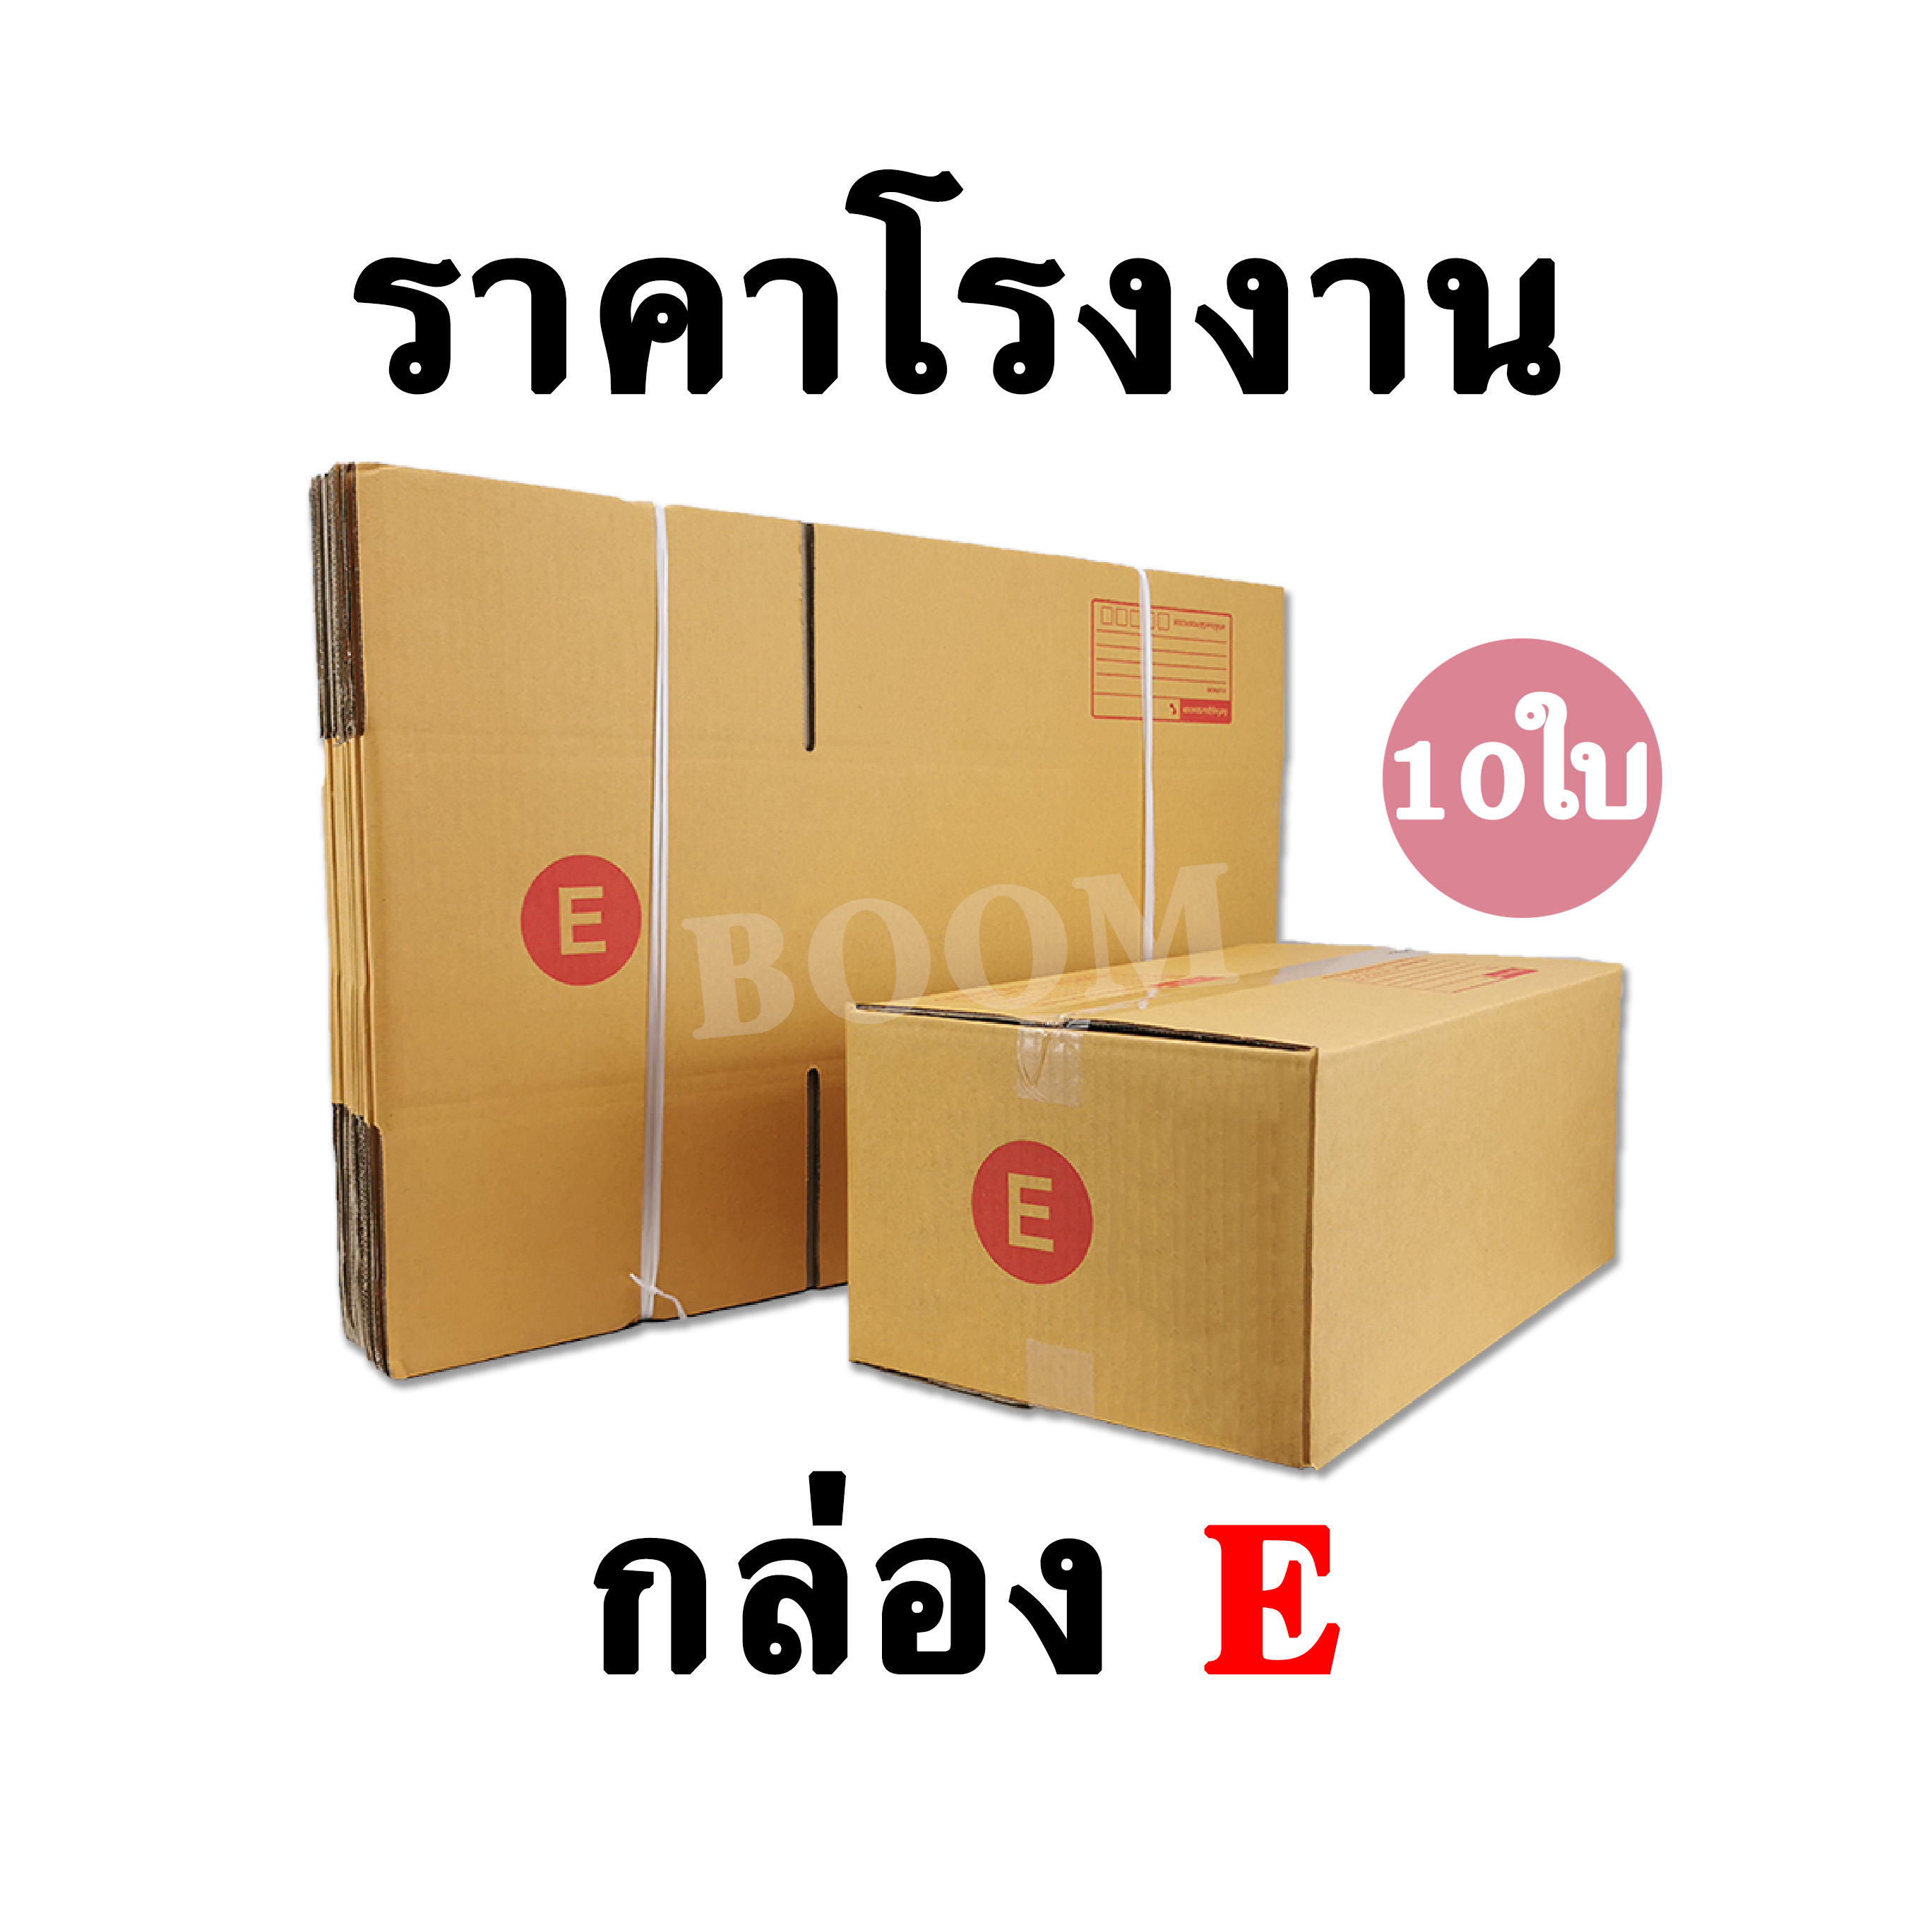 กล่องไปรษณีย์ กล่องพัสดุ E (จำนวน 10ใบ) ขนาด 24x40x17 ซม.